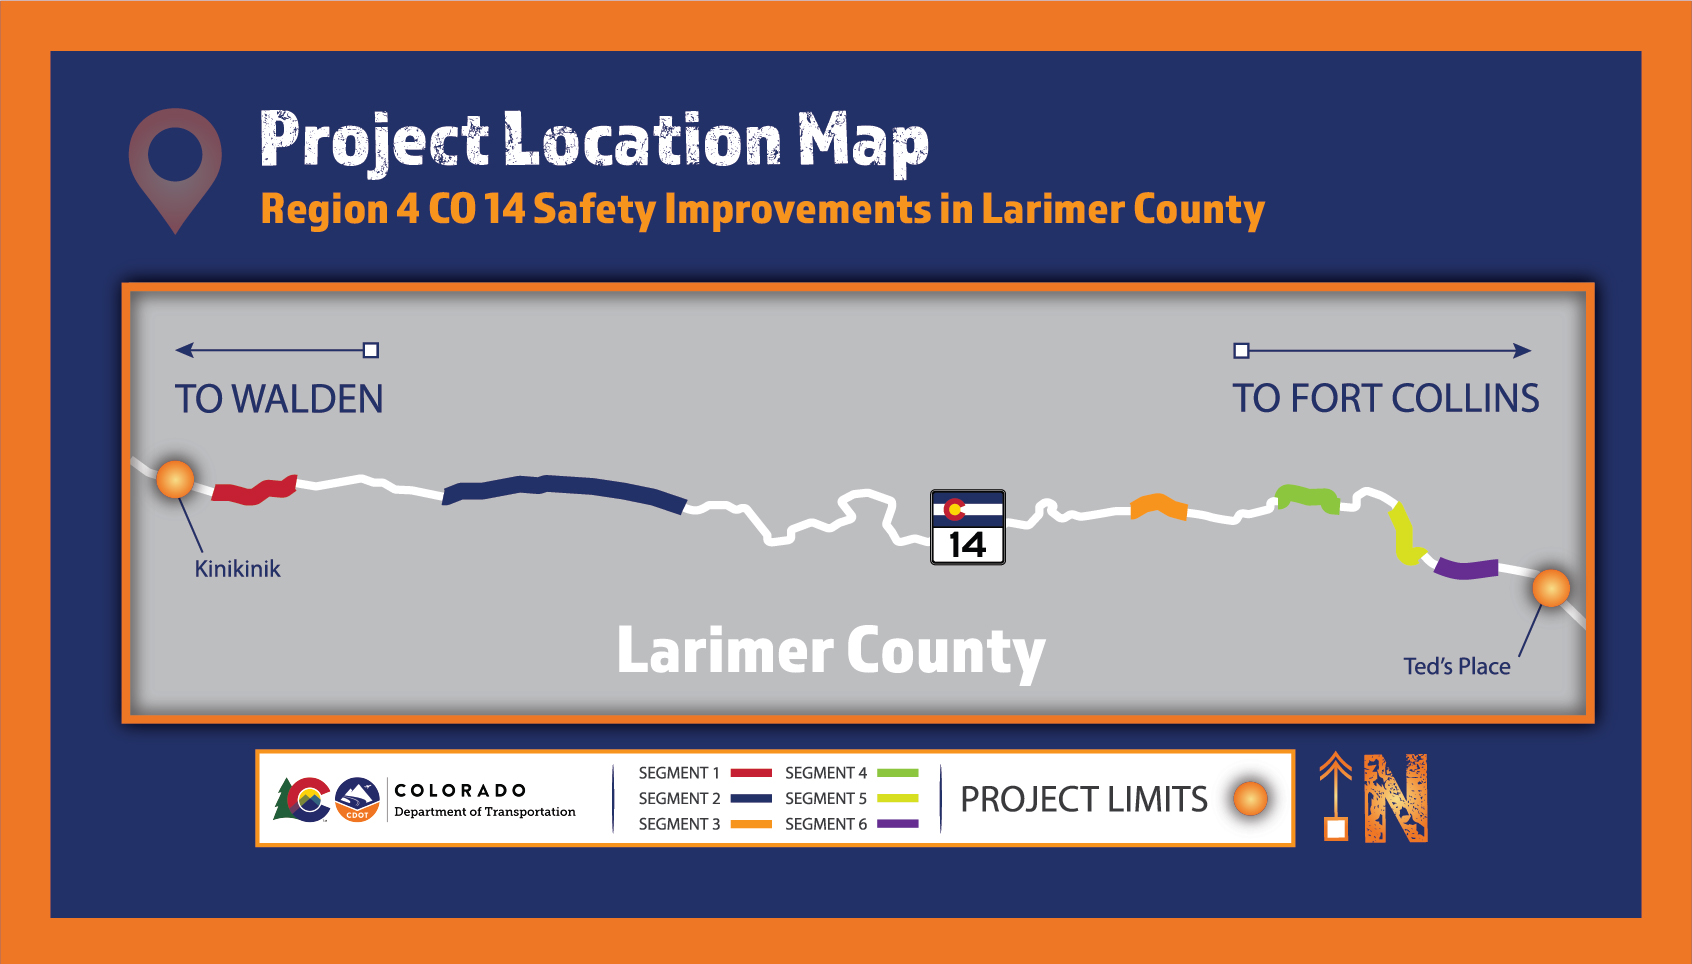 R4 CO 14 Safety Improvements in Larimer Co v2 4.28.2021-01.jpg detail image